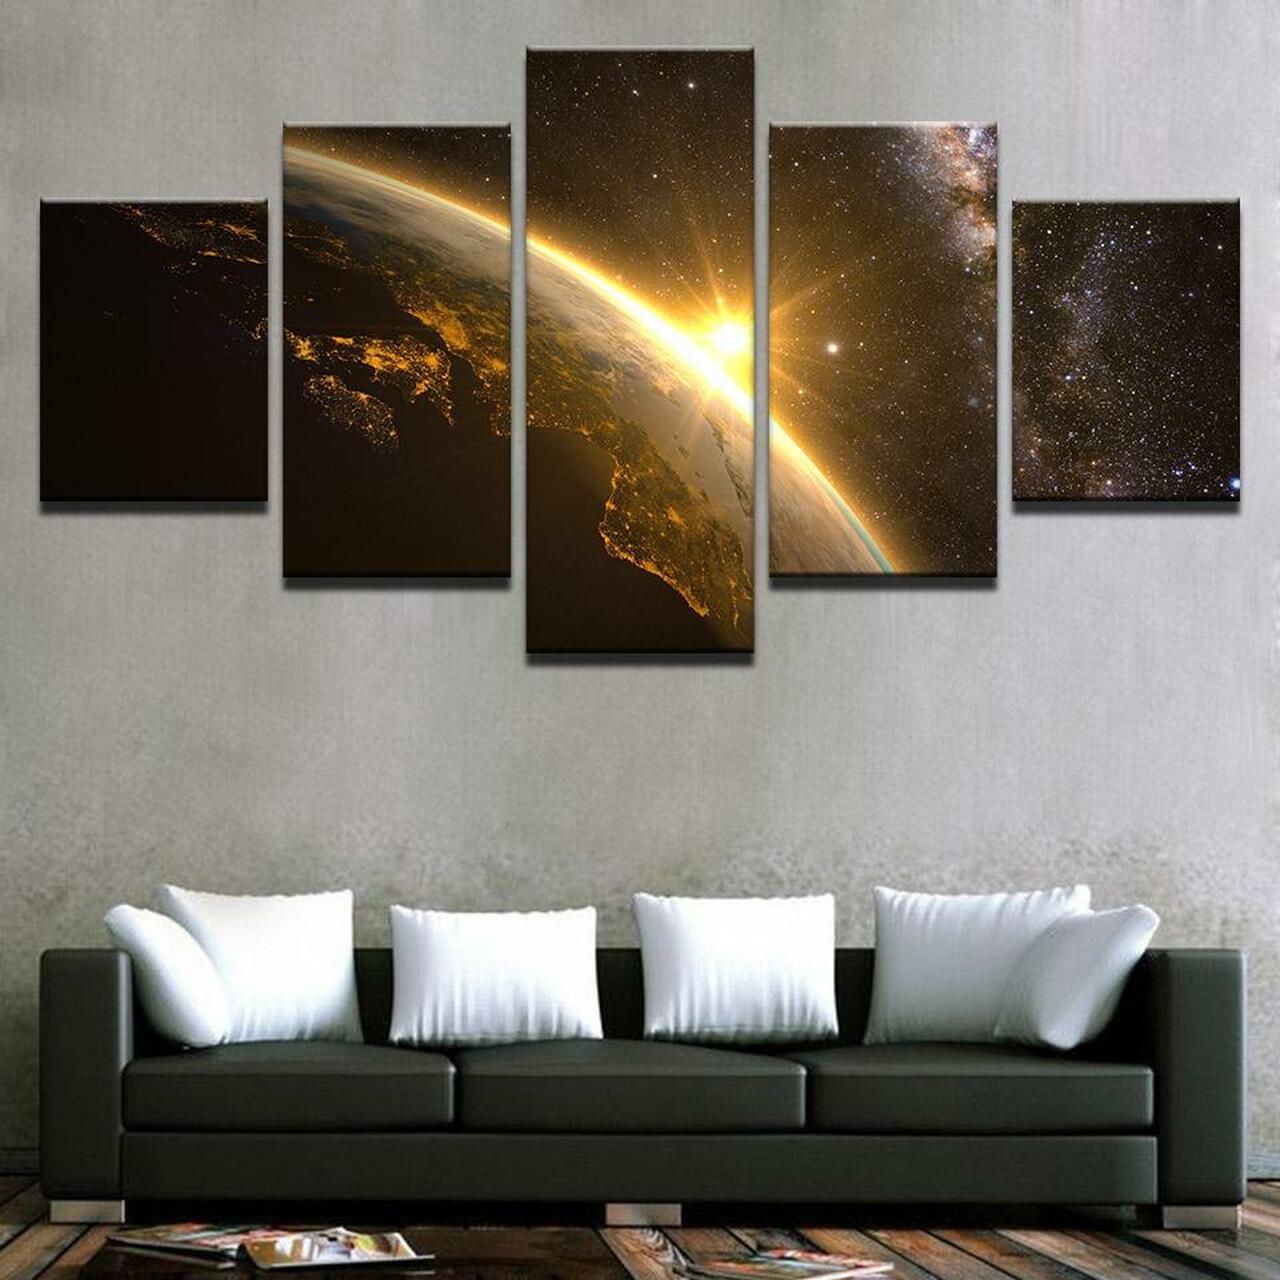 sun on earth 5 pices peinture sur toile impression sur toile toile art pour la dcoration intrieureosw4w